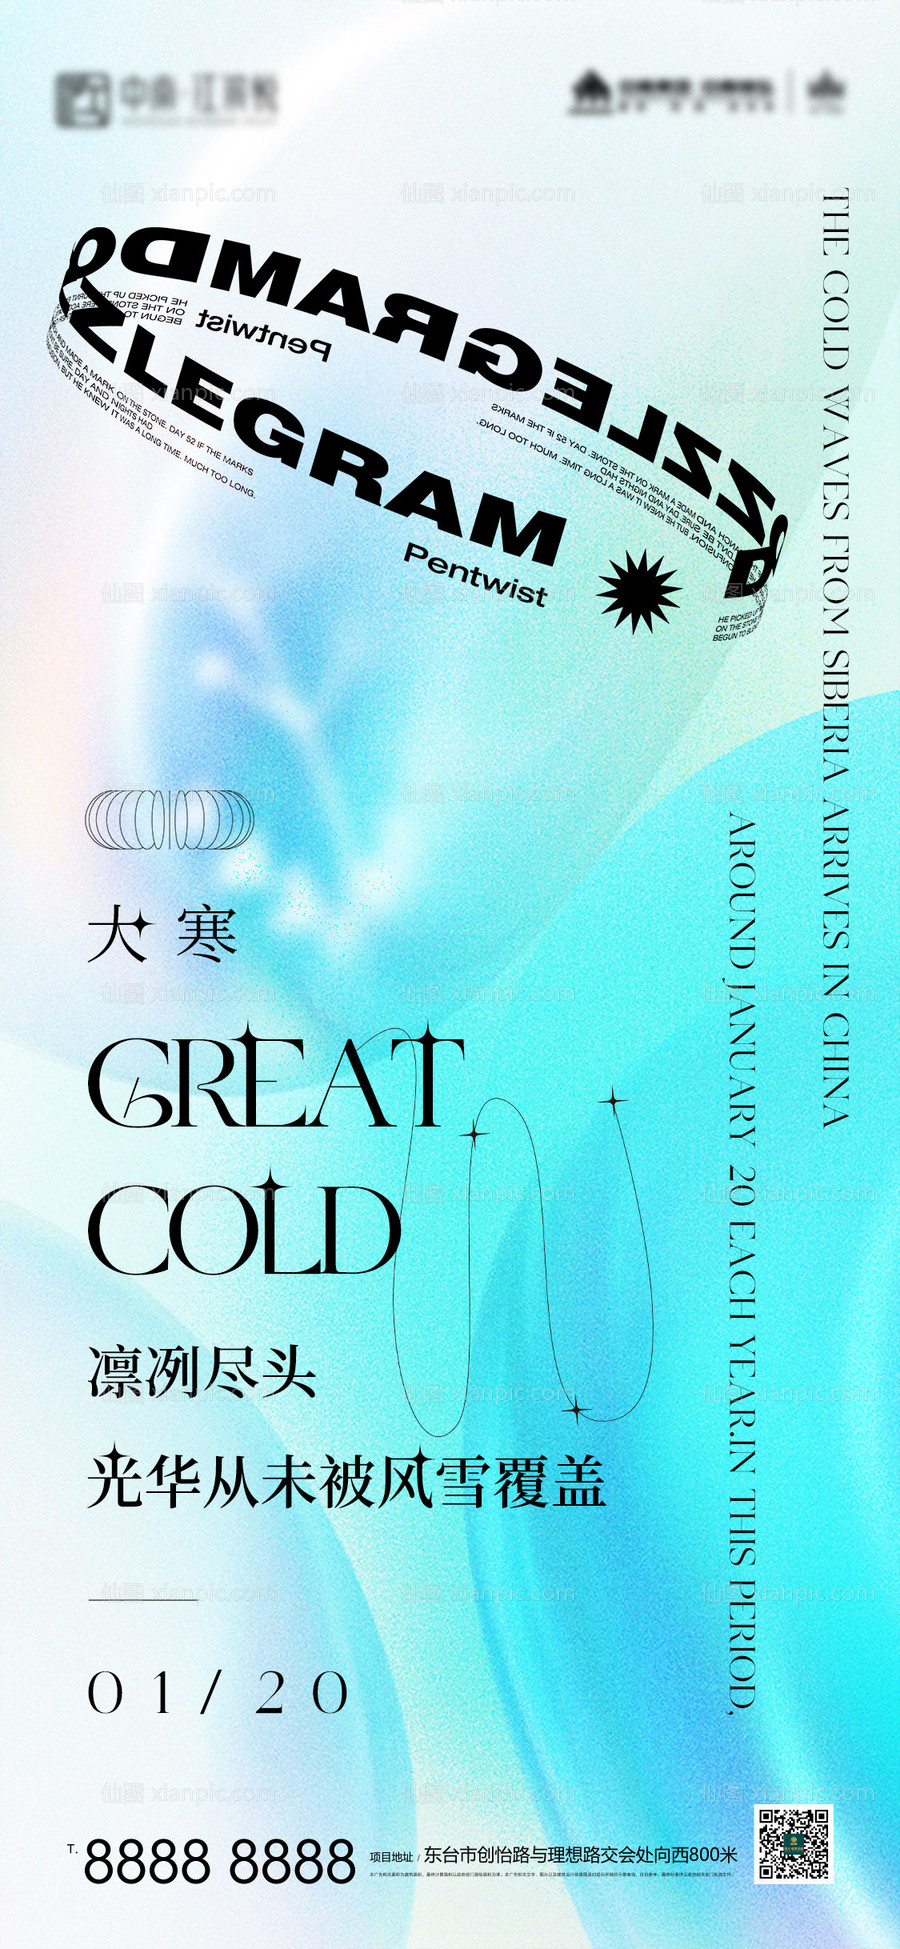 素材乐-酸性创意大寒节气艺术节海报